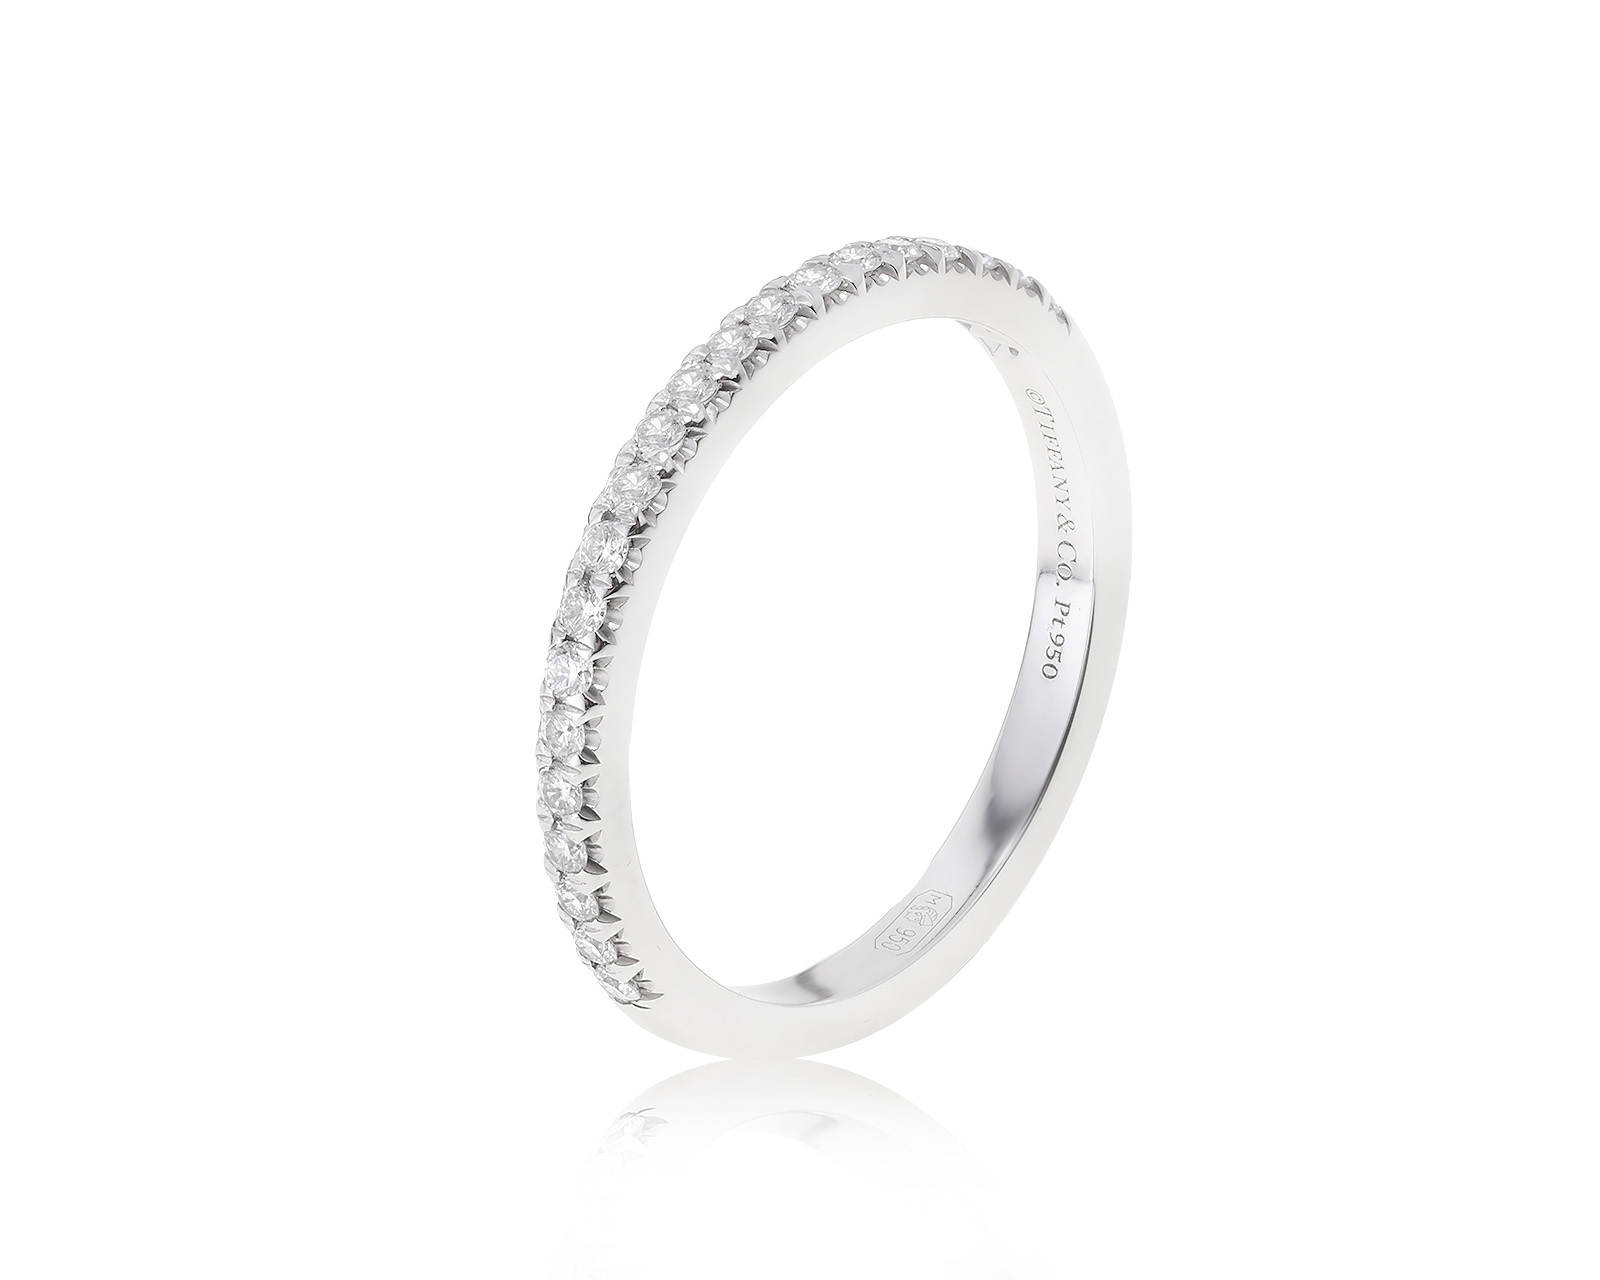 Оригинальное платиновое кольцо Tiffany&Co Soleste Half Eternity 141122/1